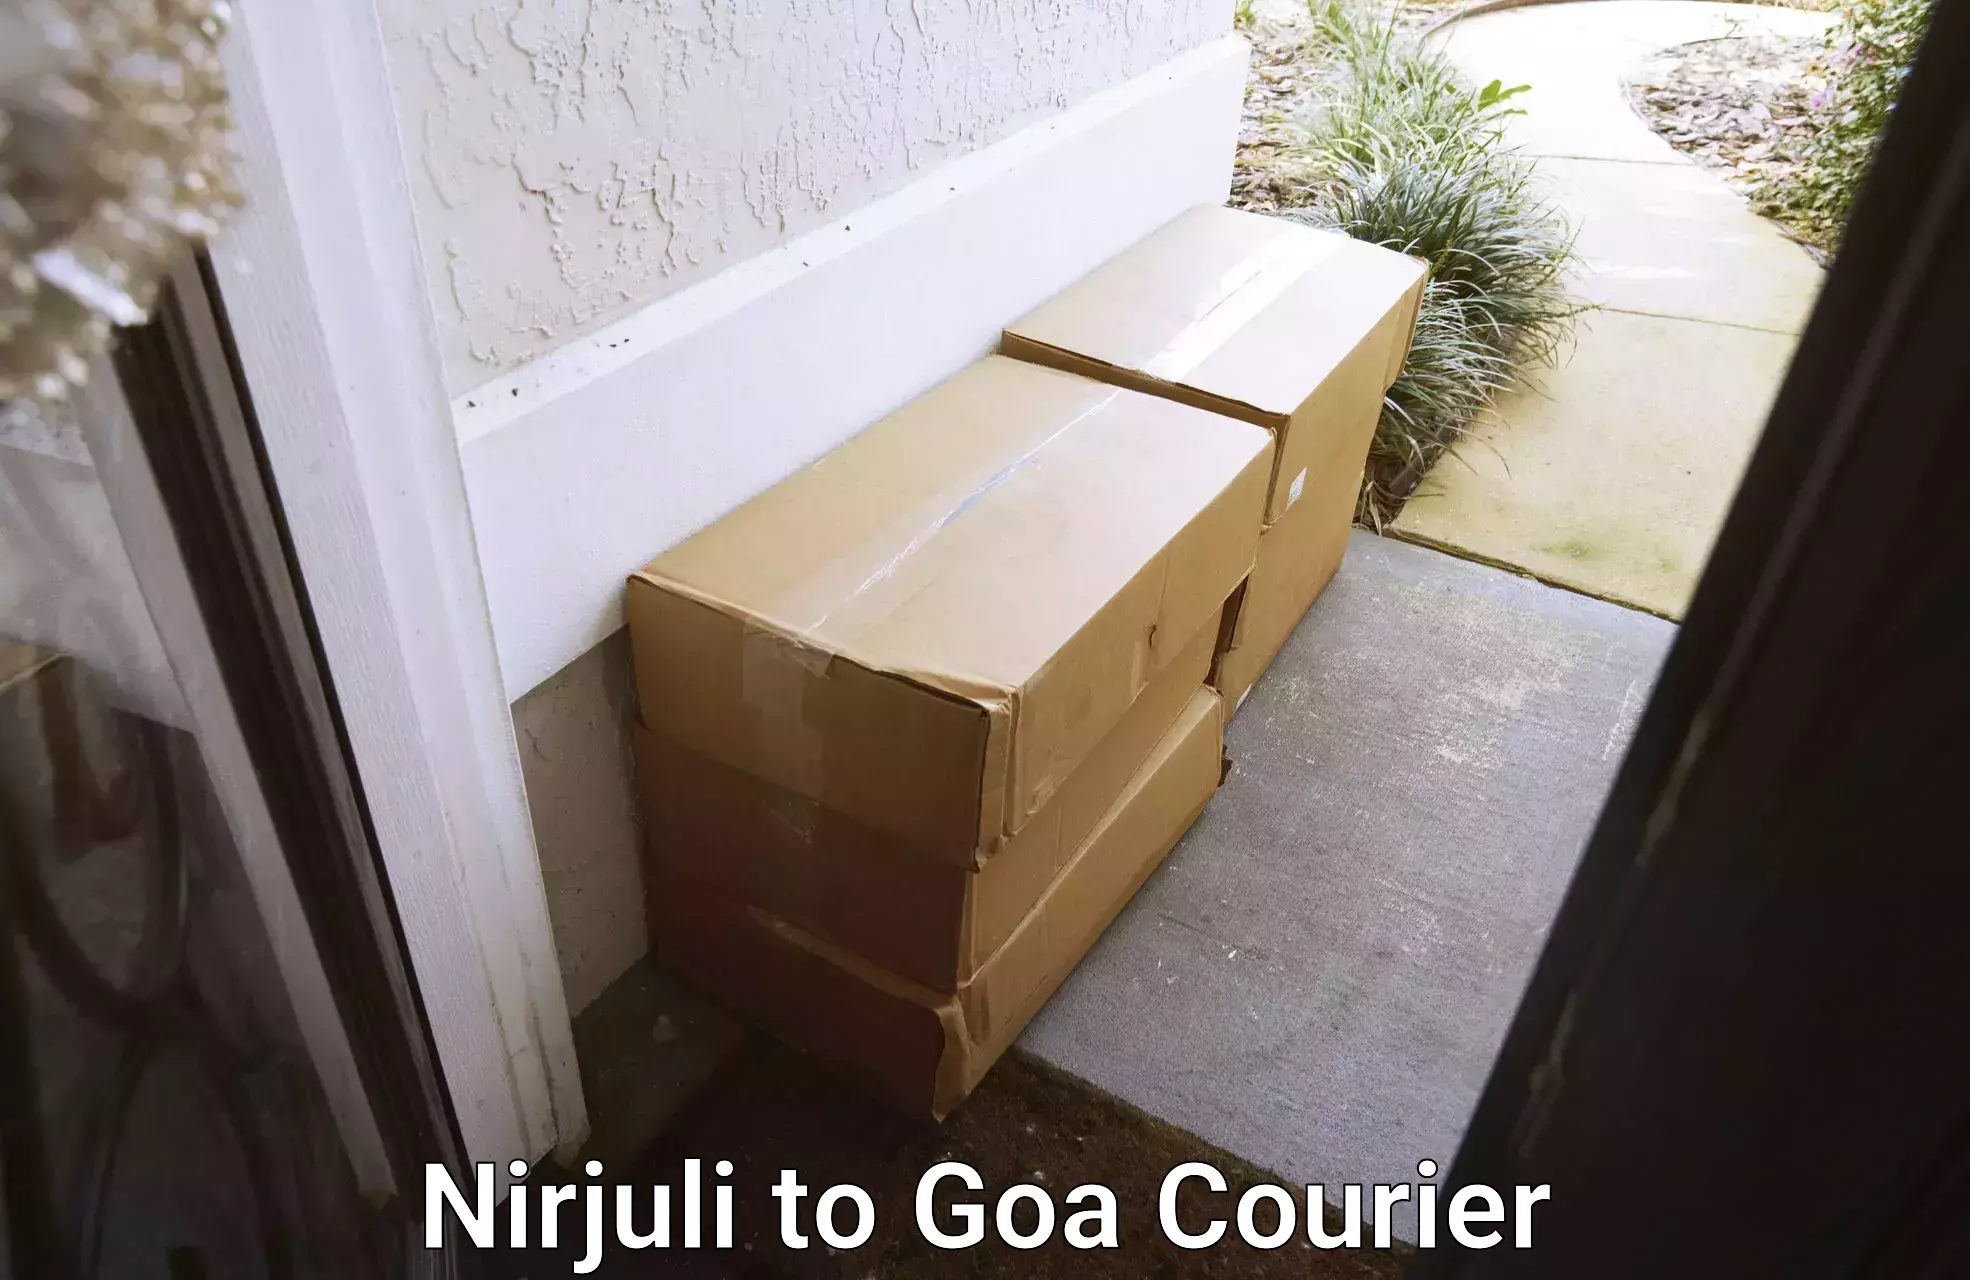 Next day courier Nirjuli to NIT Goa